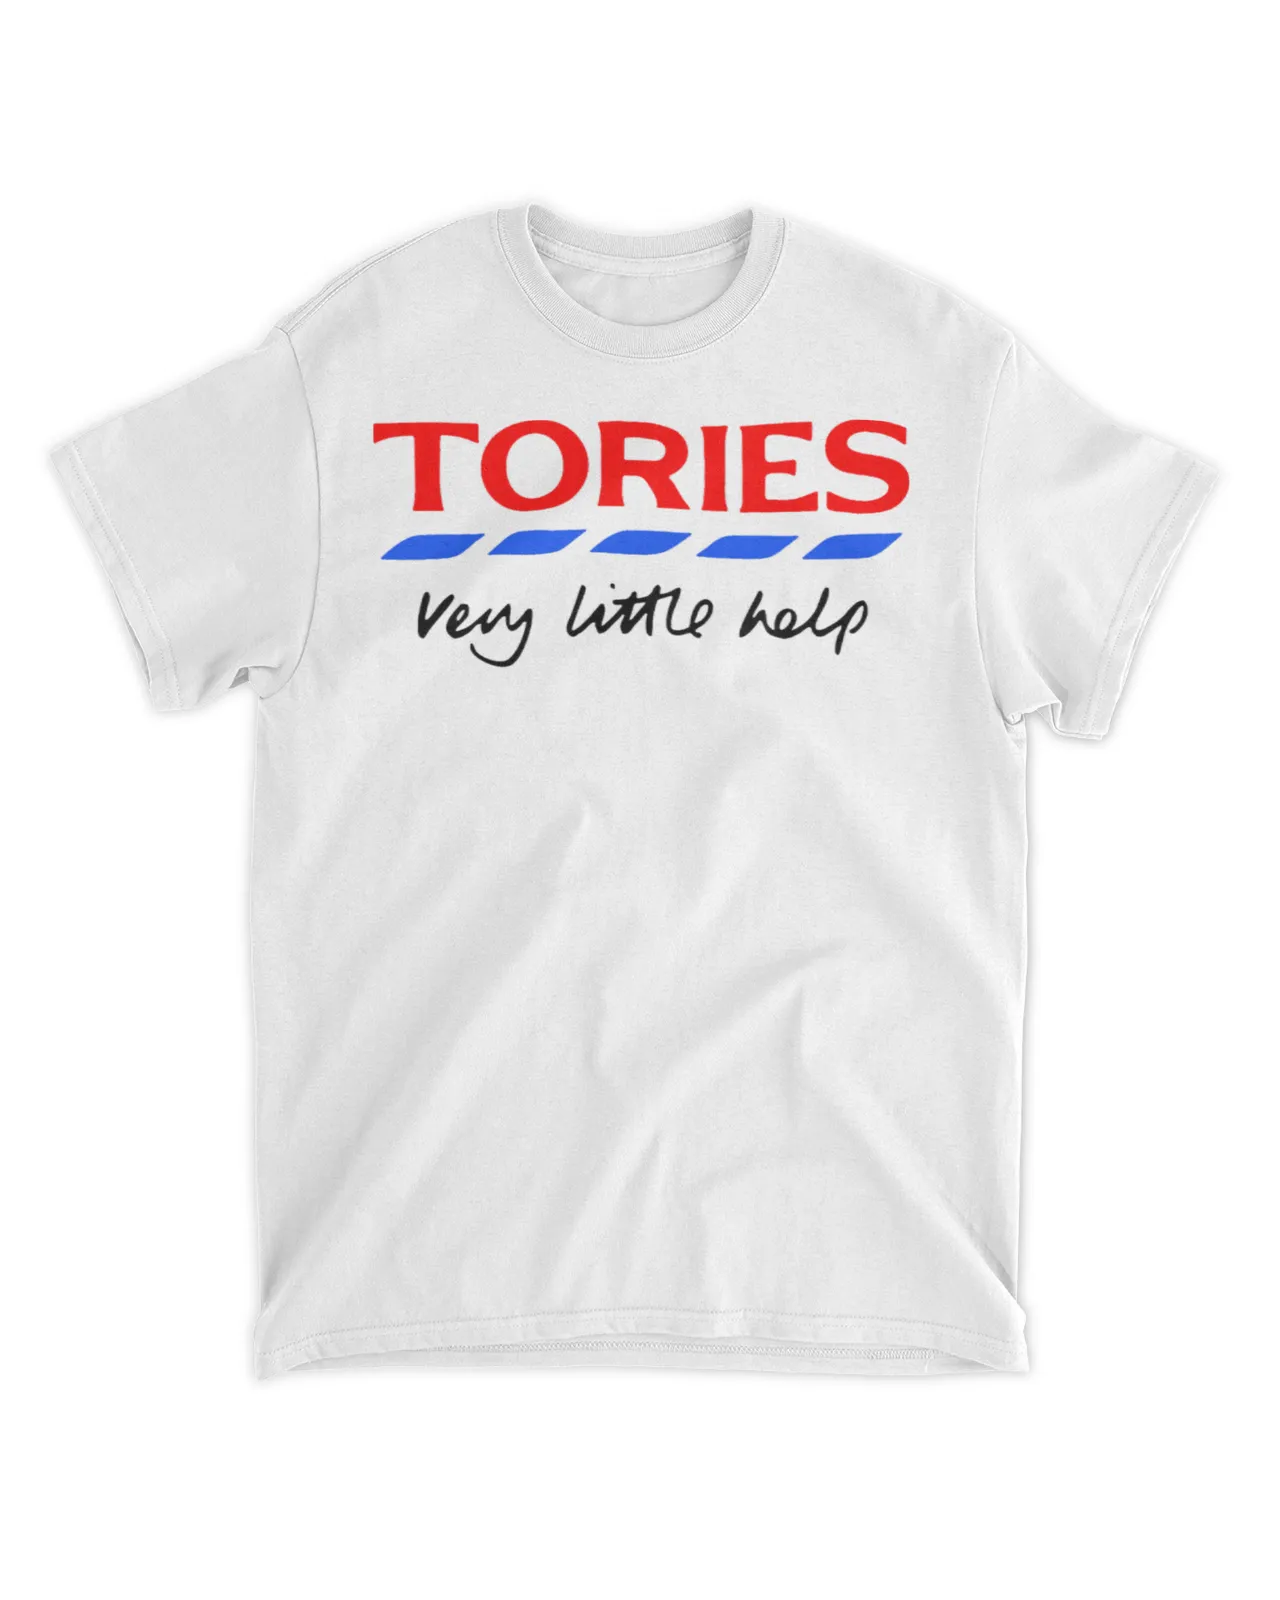  Tories very little help shirt